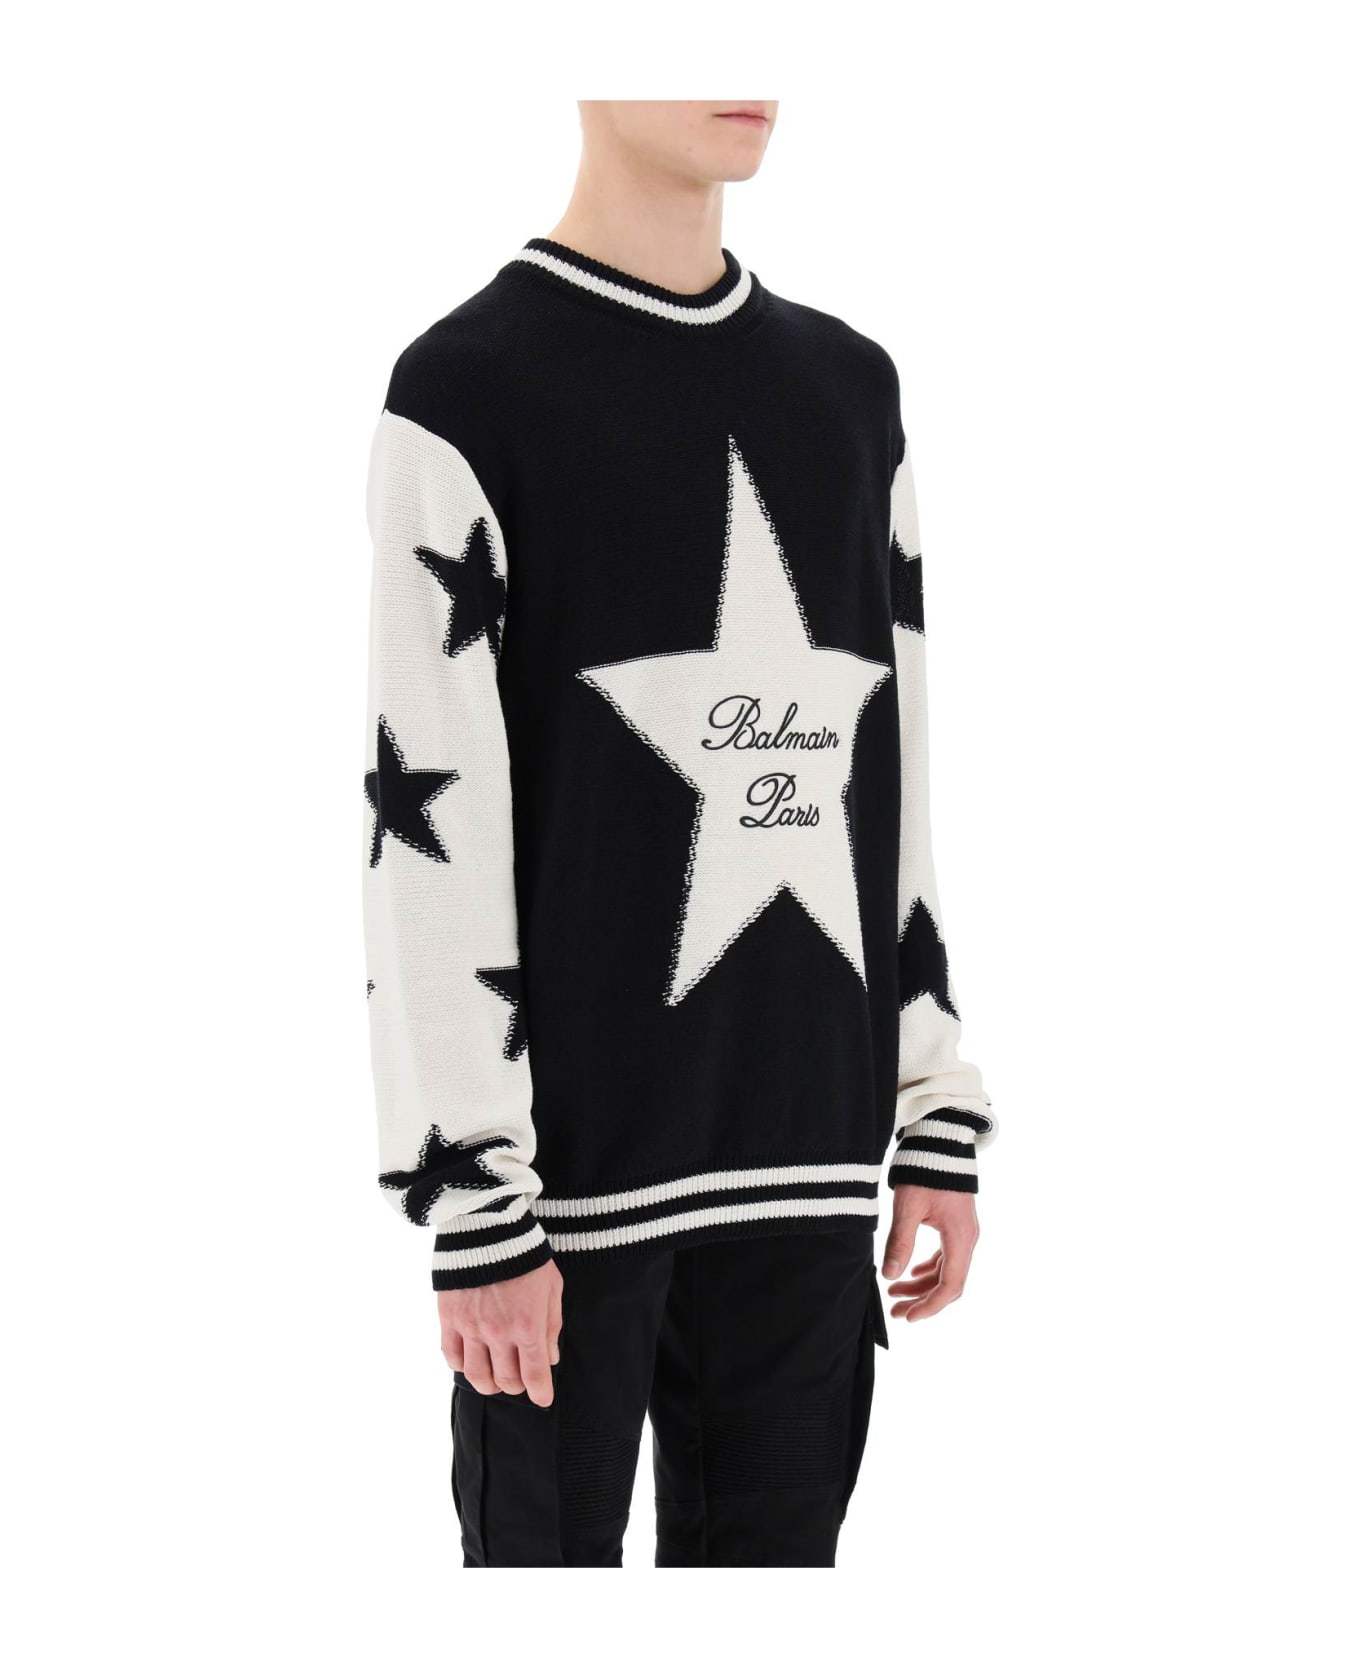 Balmain Sweater With Star Motif - NOIR NATUREL (Black)